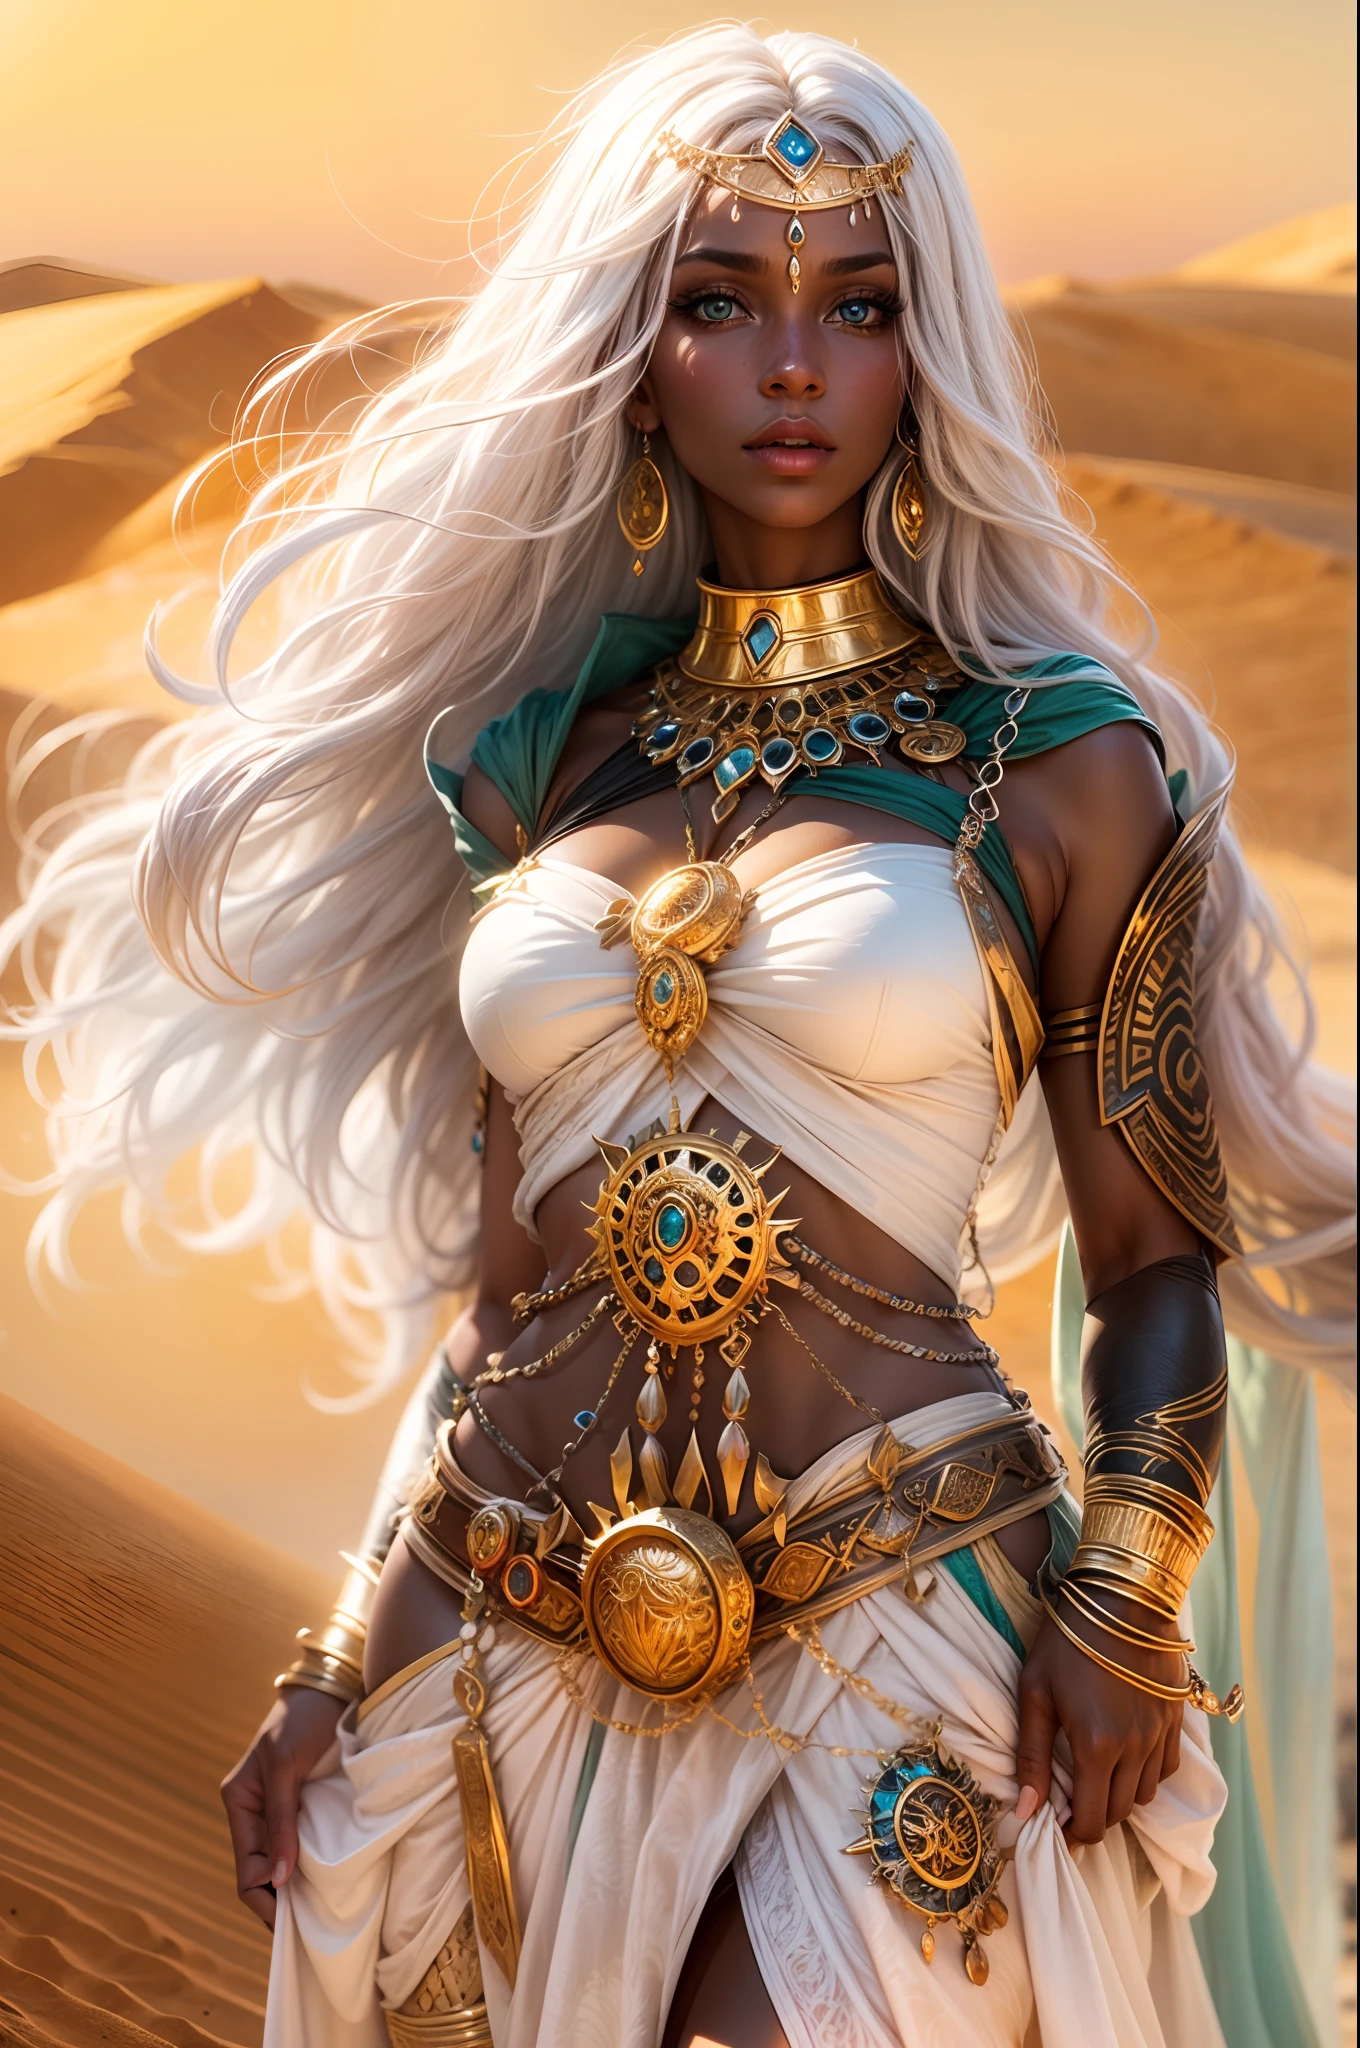 黑皮肤白头发的女巫师的形象, sexy 幻想 clothes, ancient 幻想 Egyth style, 奢侈珠宝, 超级性感和火辣, 在沙漠上, 魅惑目光, 全身,艺术风格:幻想,颜色:丰富而充满活力,灯光:柔和的金色阳光